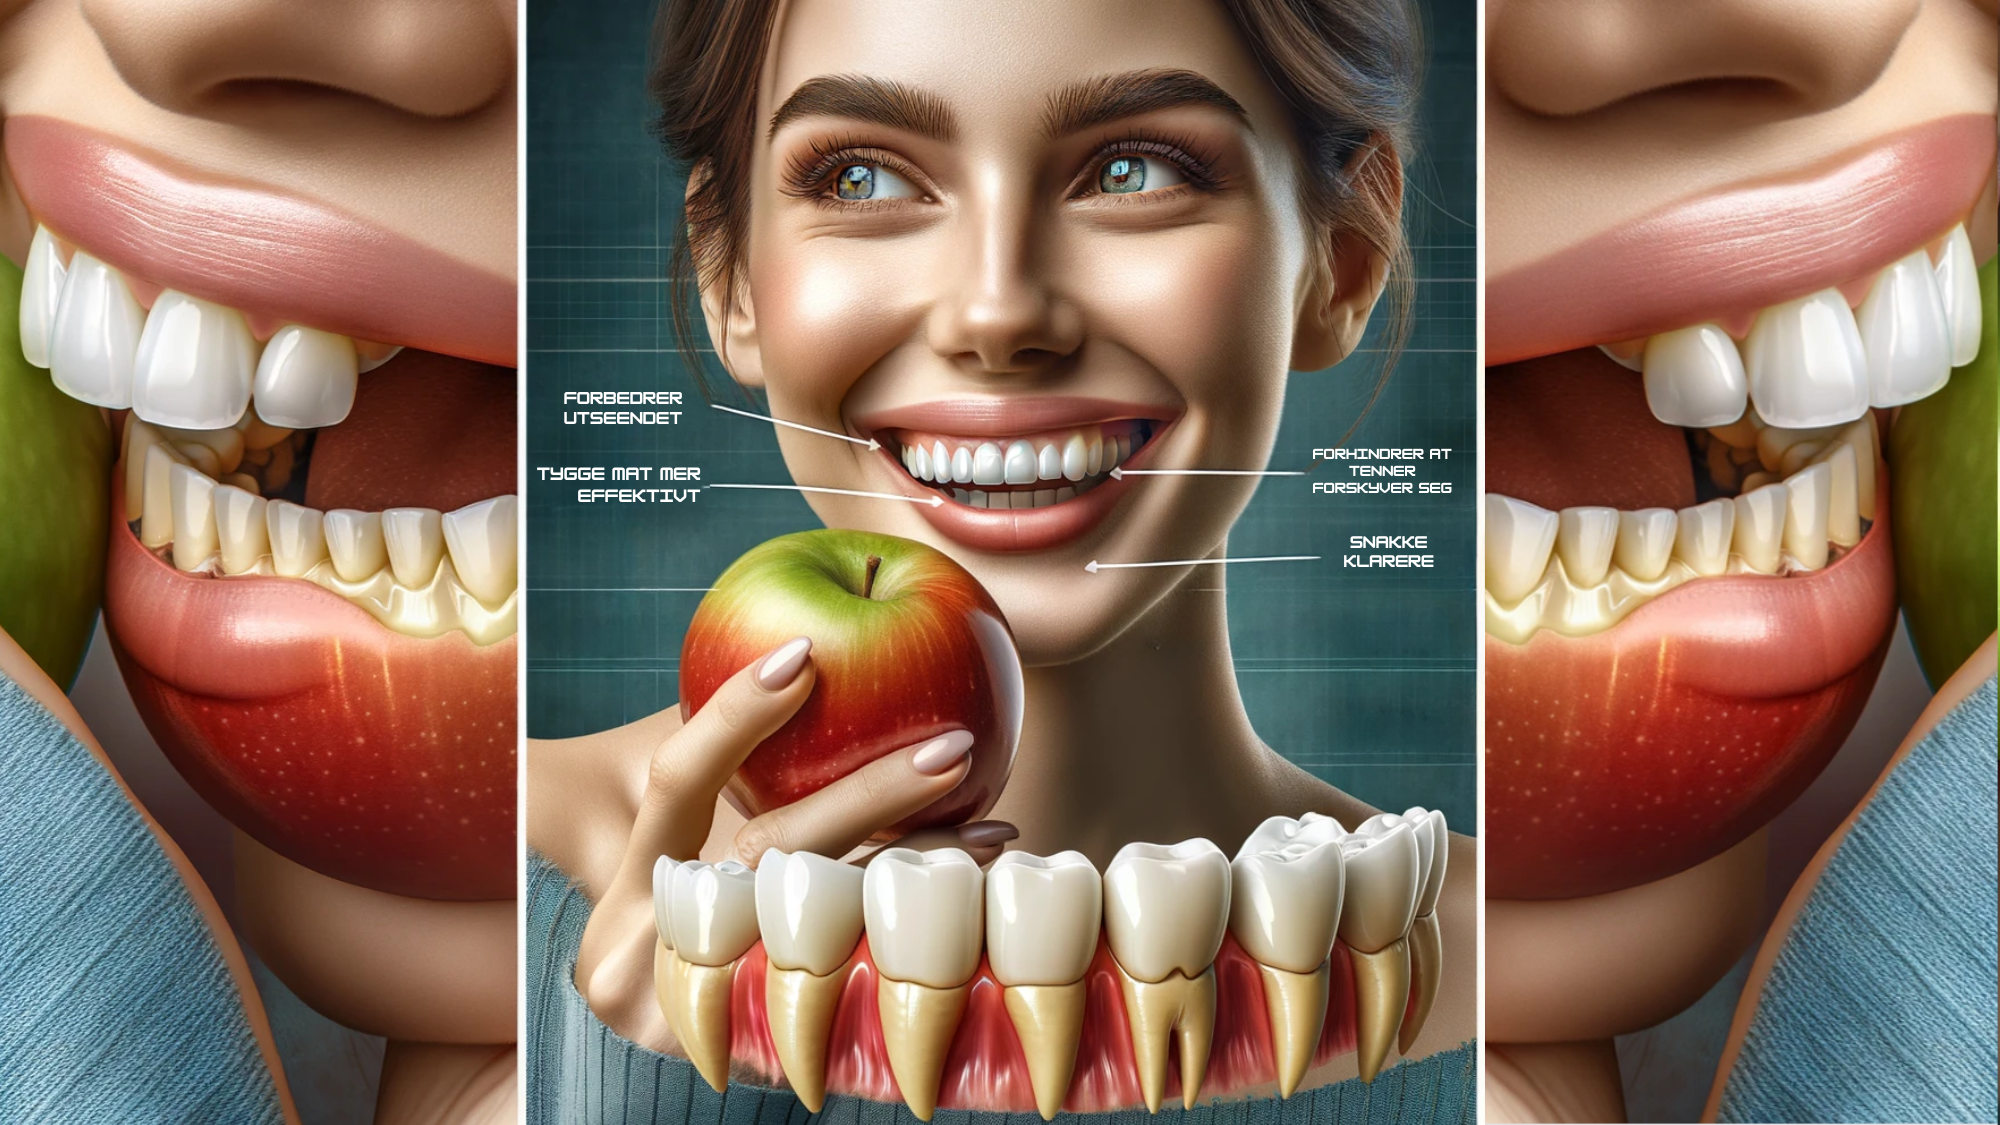 Tredelt bilde som viser fordeler med tannbro: spising, justering, smil